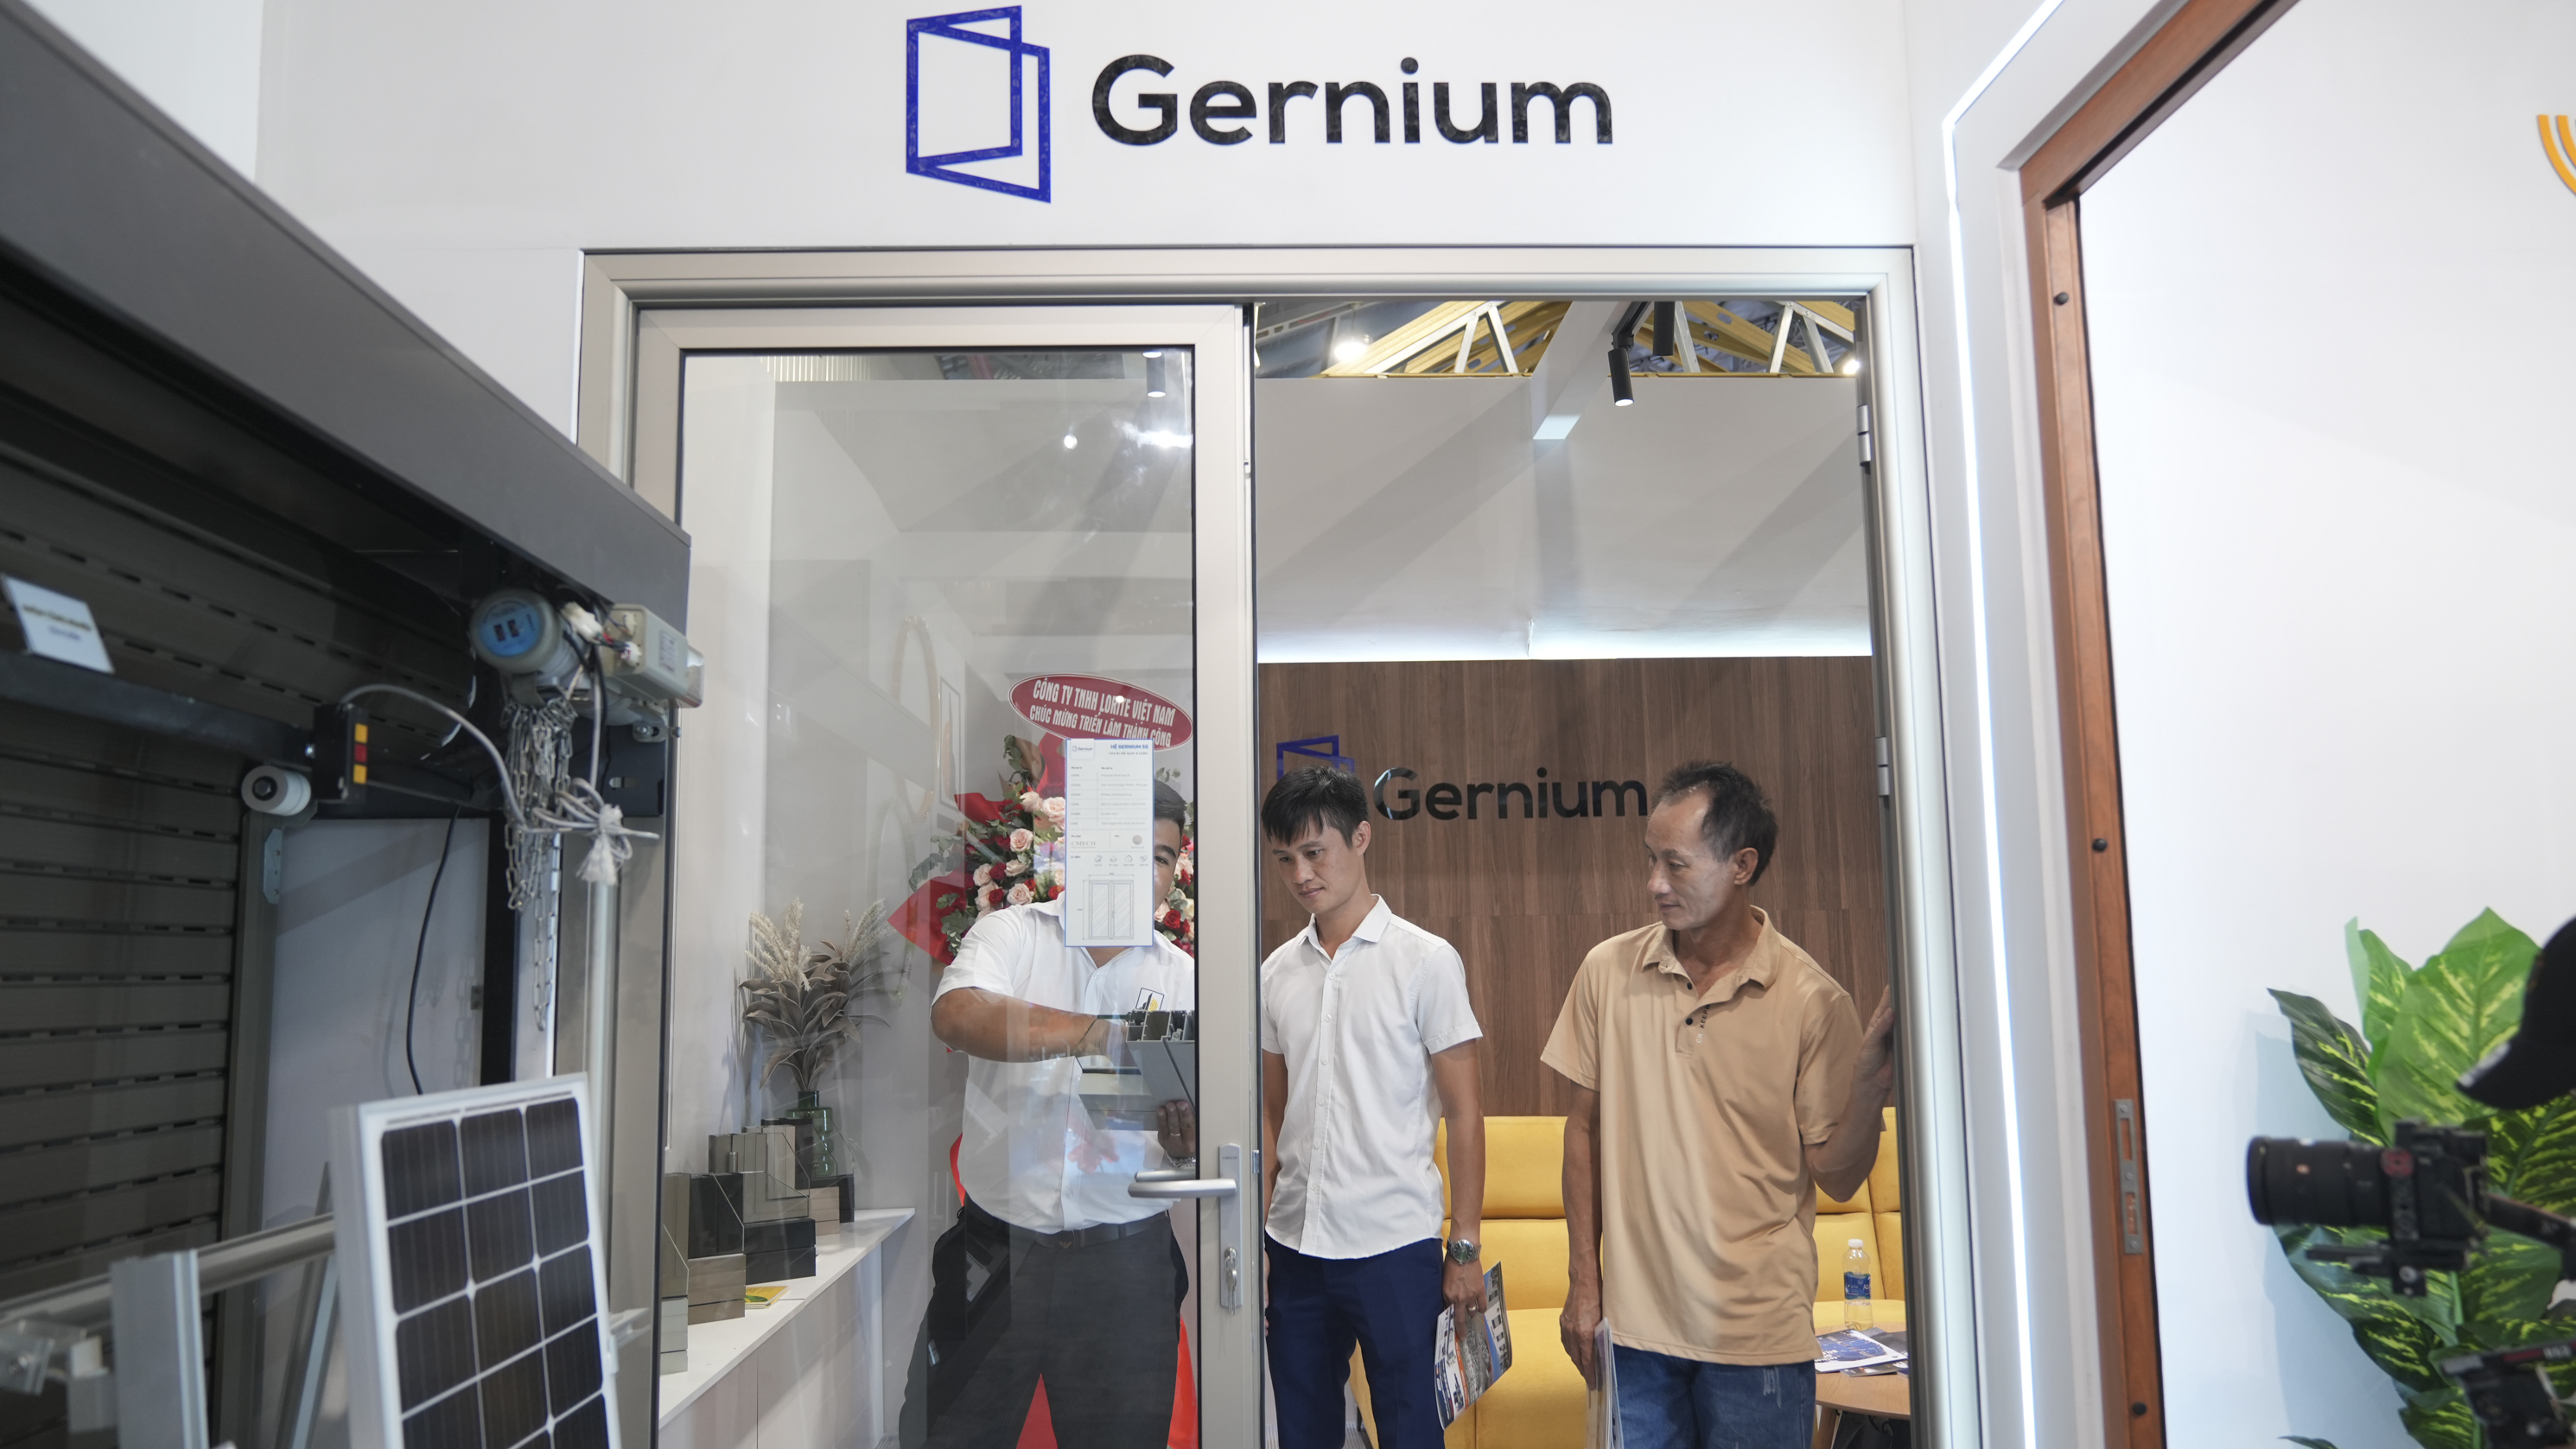 Hình minh họa về sản phẩm Gernium